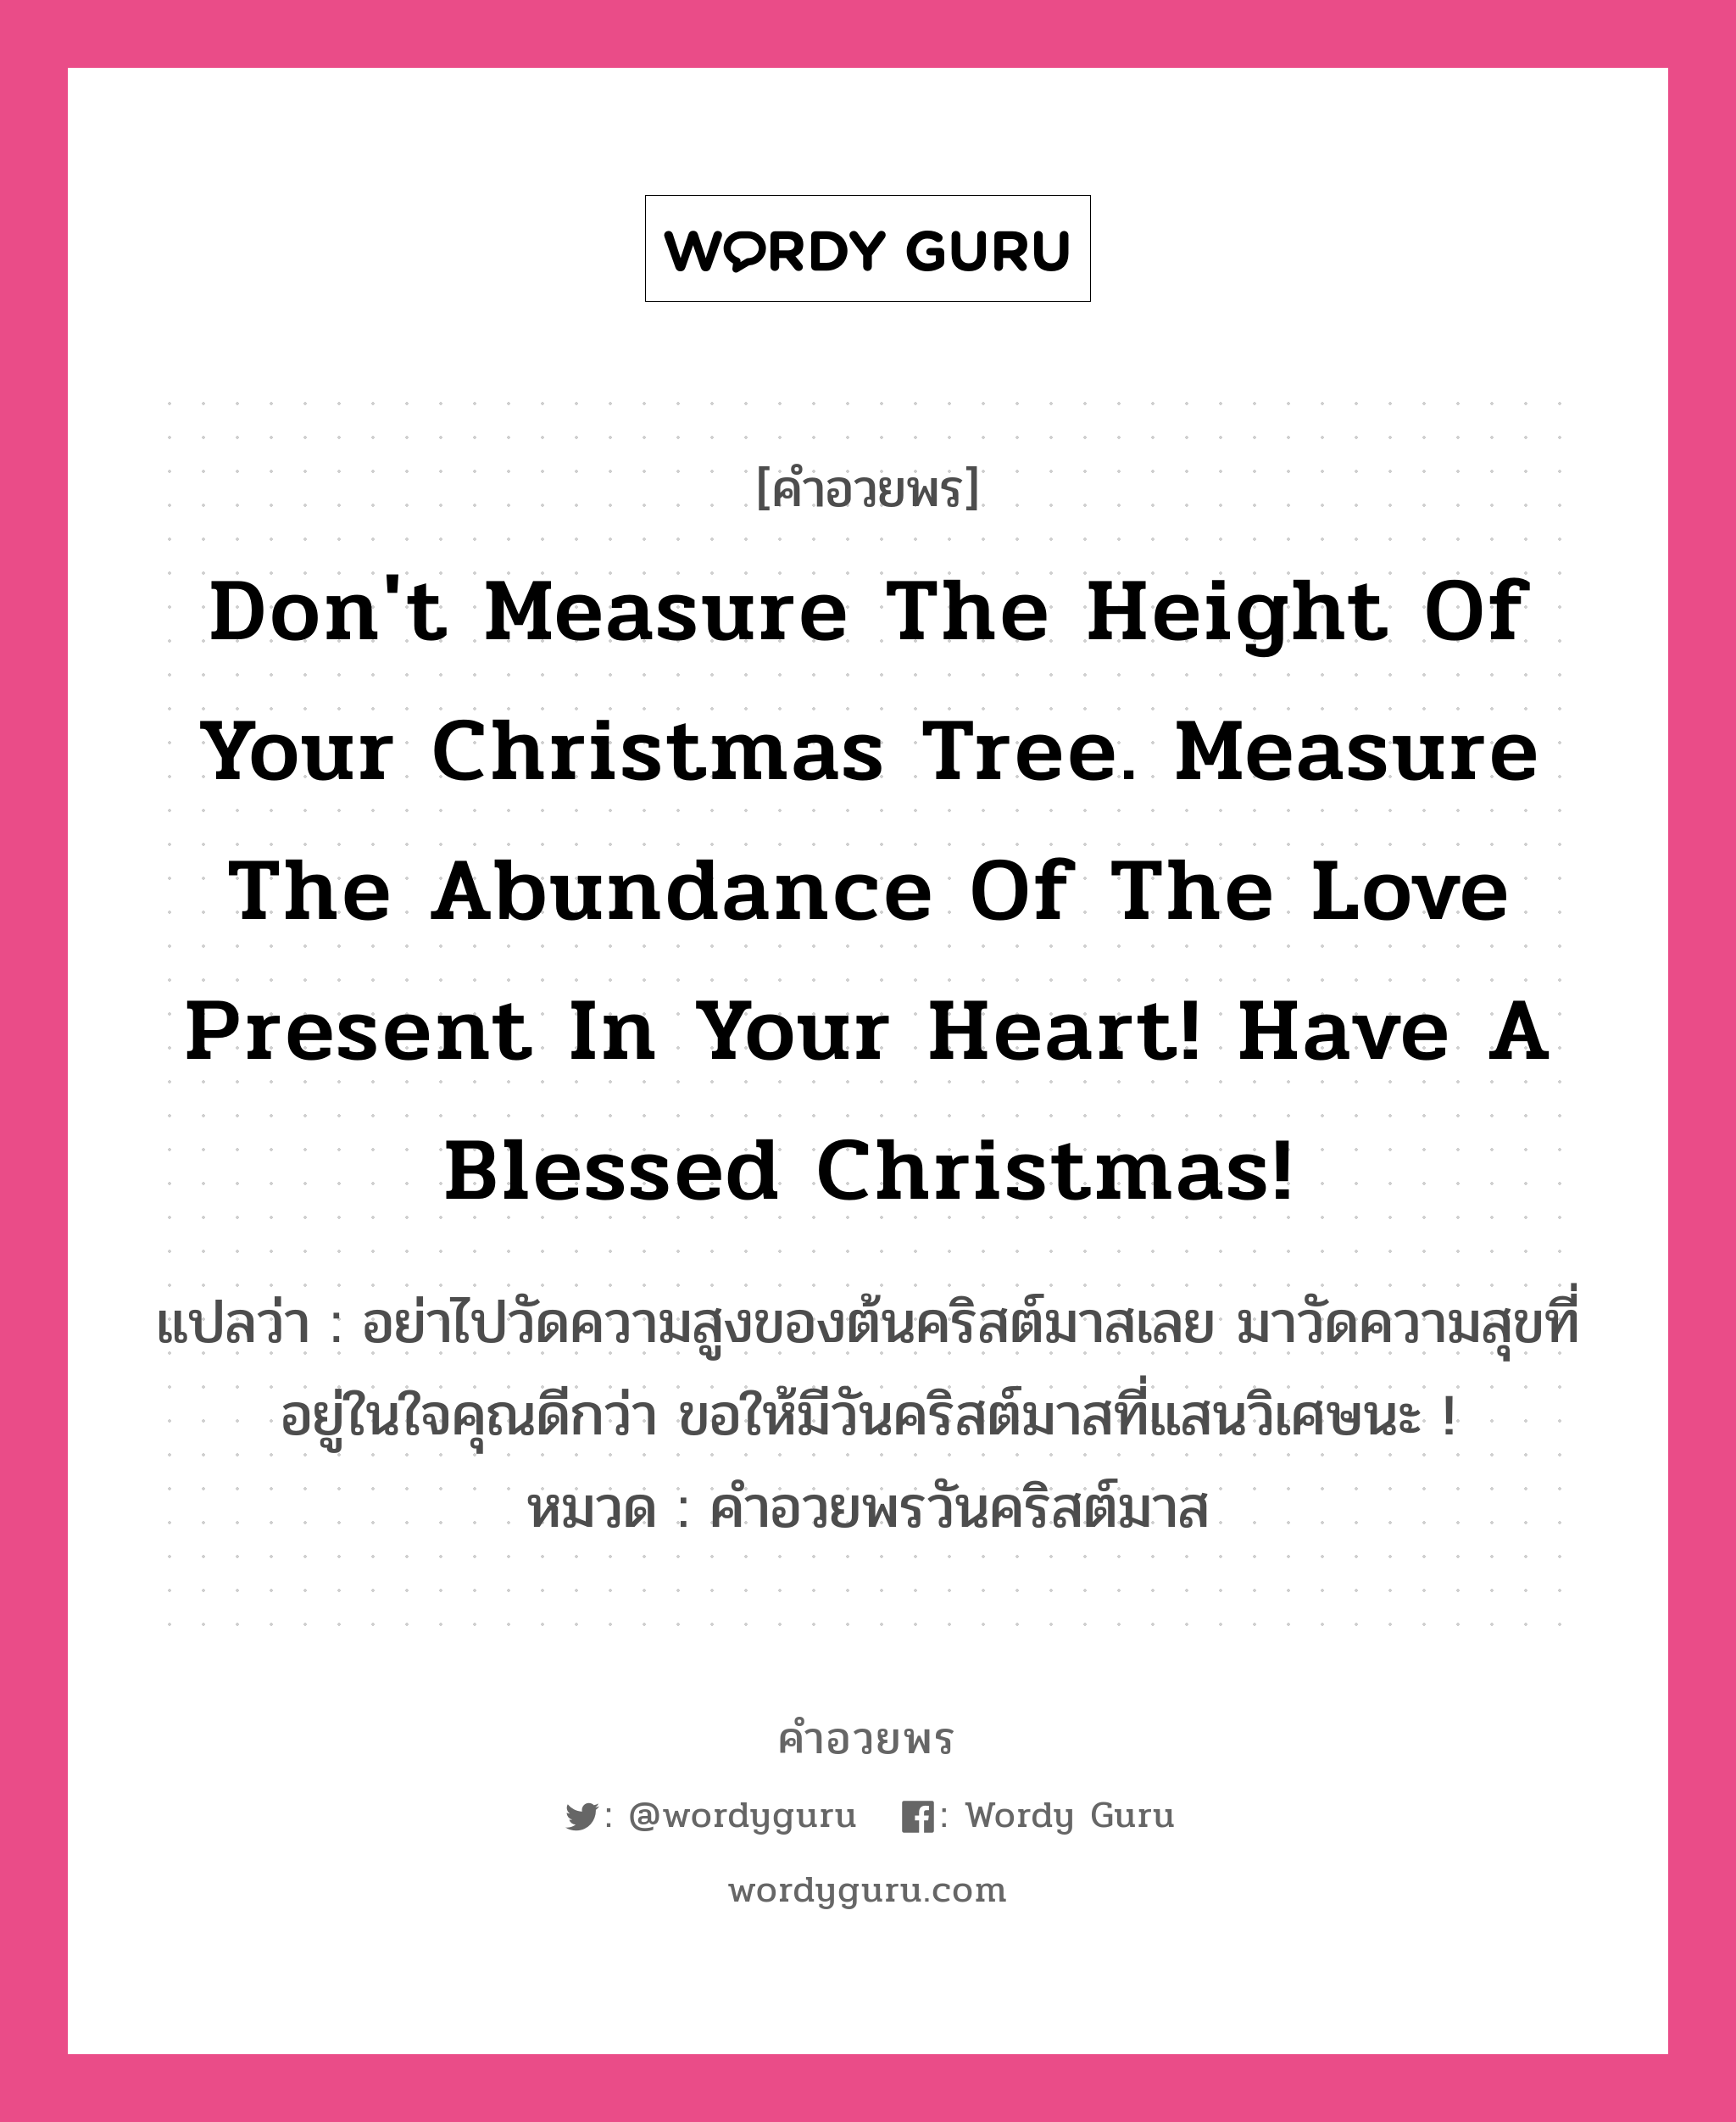 คำอวยพร Don't measure the height of your Christmas tree. Measure the abundance of the love present in your heart! Have a Blessed Christmas! คืออะไร?, แปลว่า อย่าไปวัดความสูงของต้นคริสต์มาสเลย มาวัดความสุขที่อยู่ในใจคุณดีกว่า ขอให้มีวันคริสต์มาสที่แสนวิเศษนะ ! หมวด คำอวยพรวันคริสต์มาส หมวด คำอวยพรวันคริสต์มาส